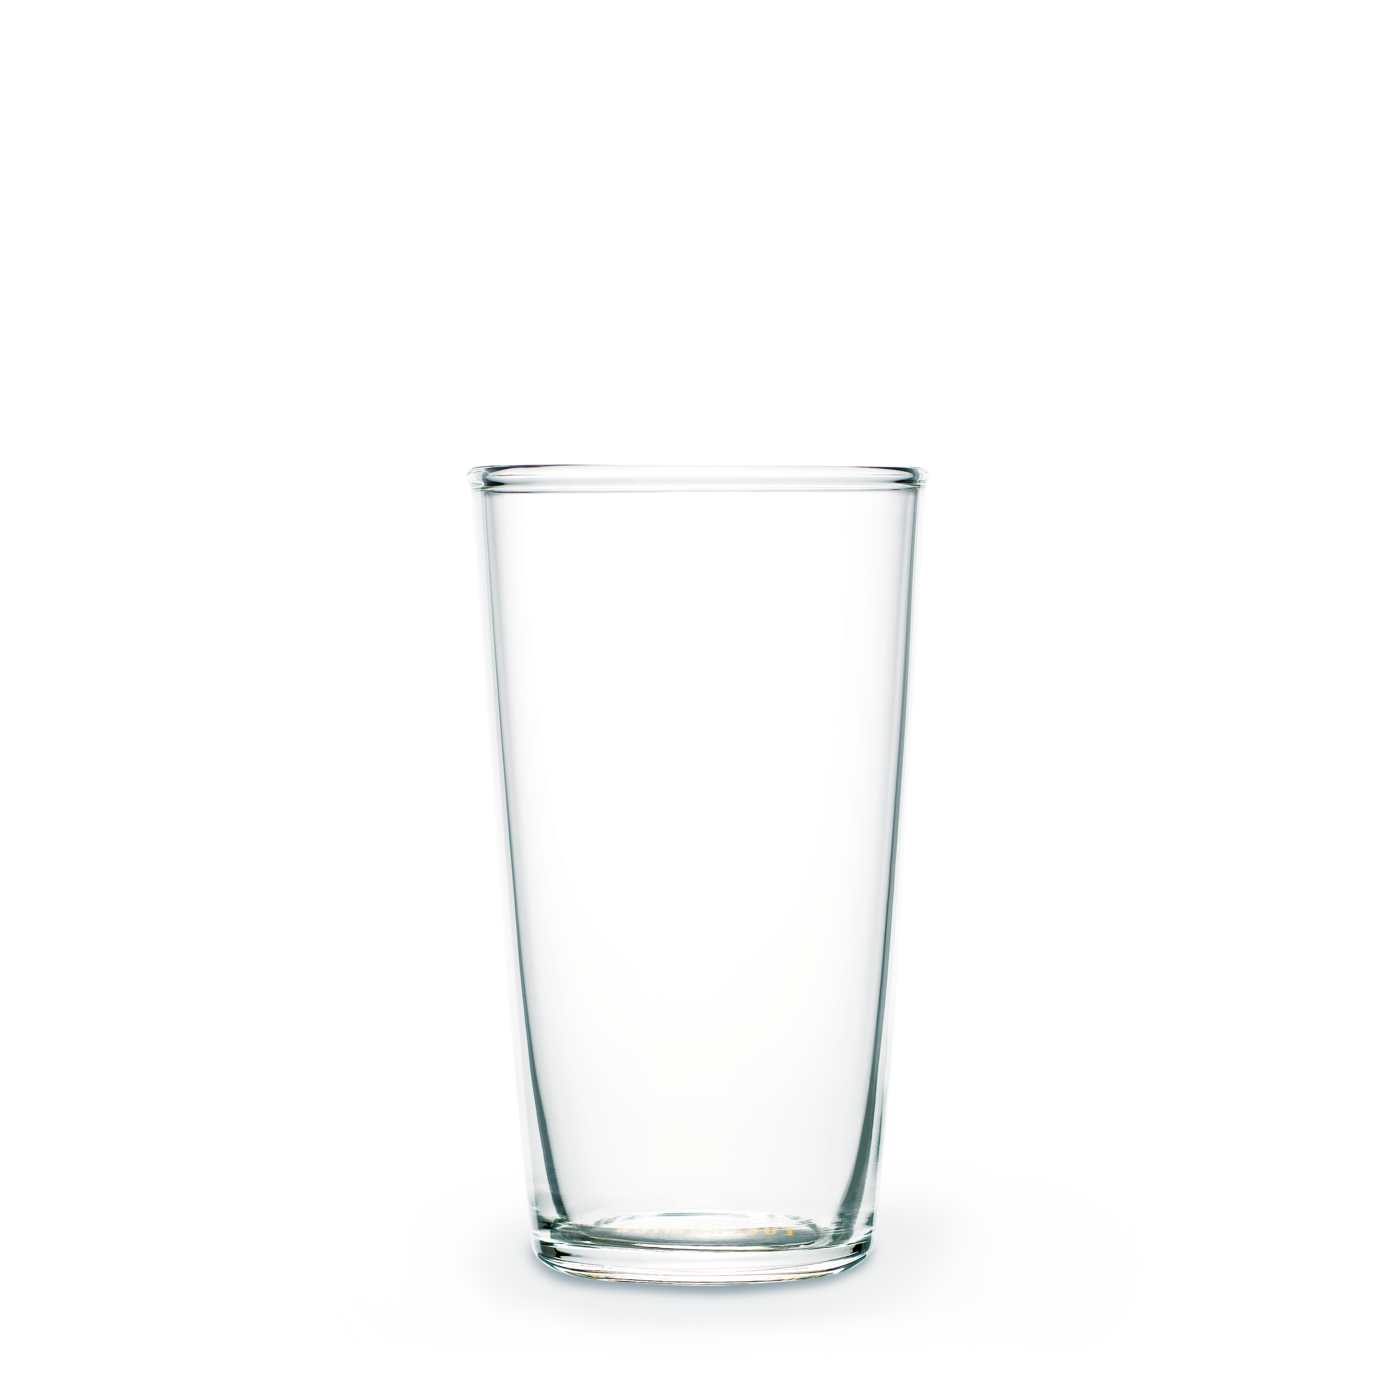 כוס זכוכית גבוהה 80 מ״ל מקולקציית אורבן גלאס - URBAN GLASS